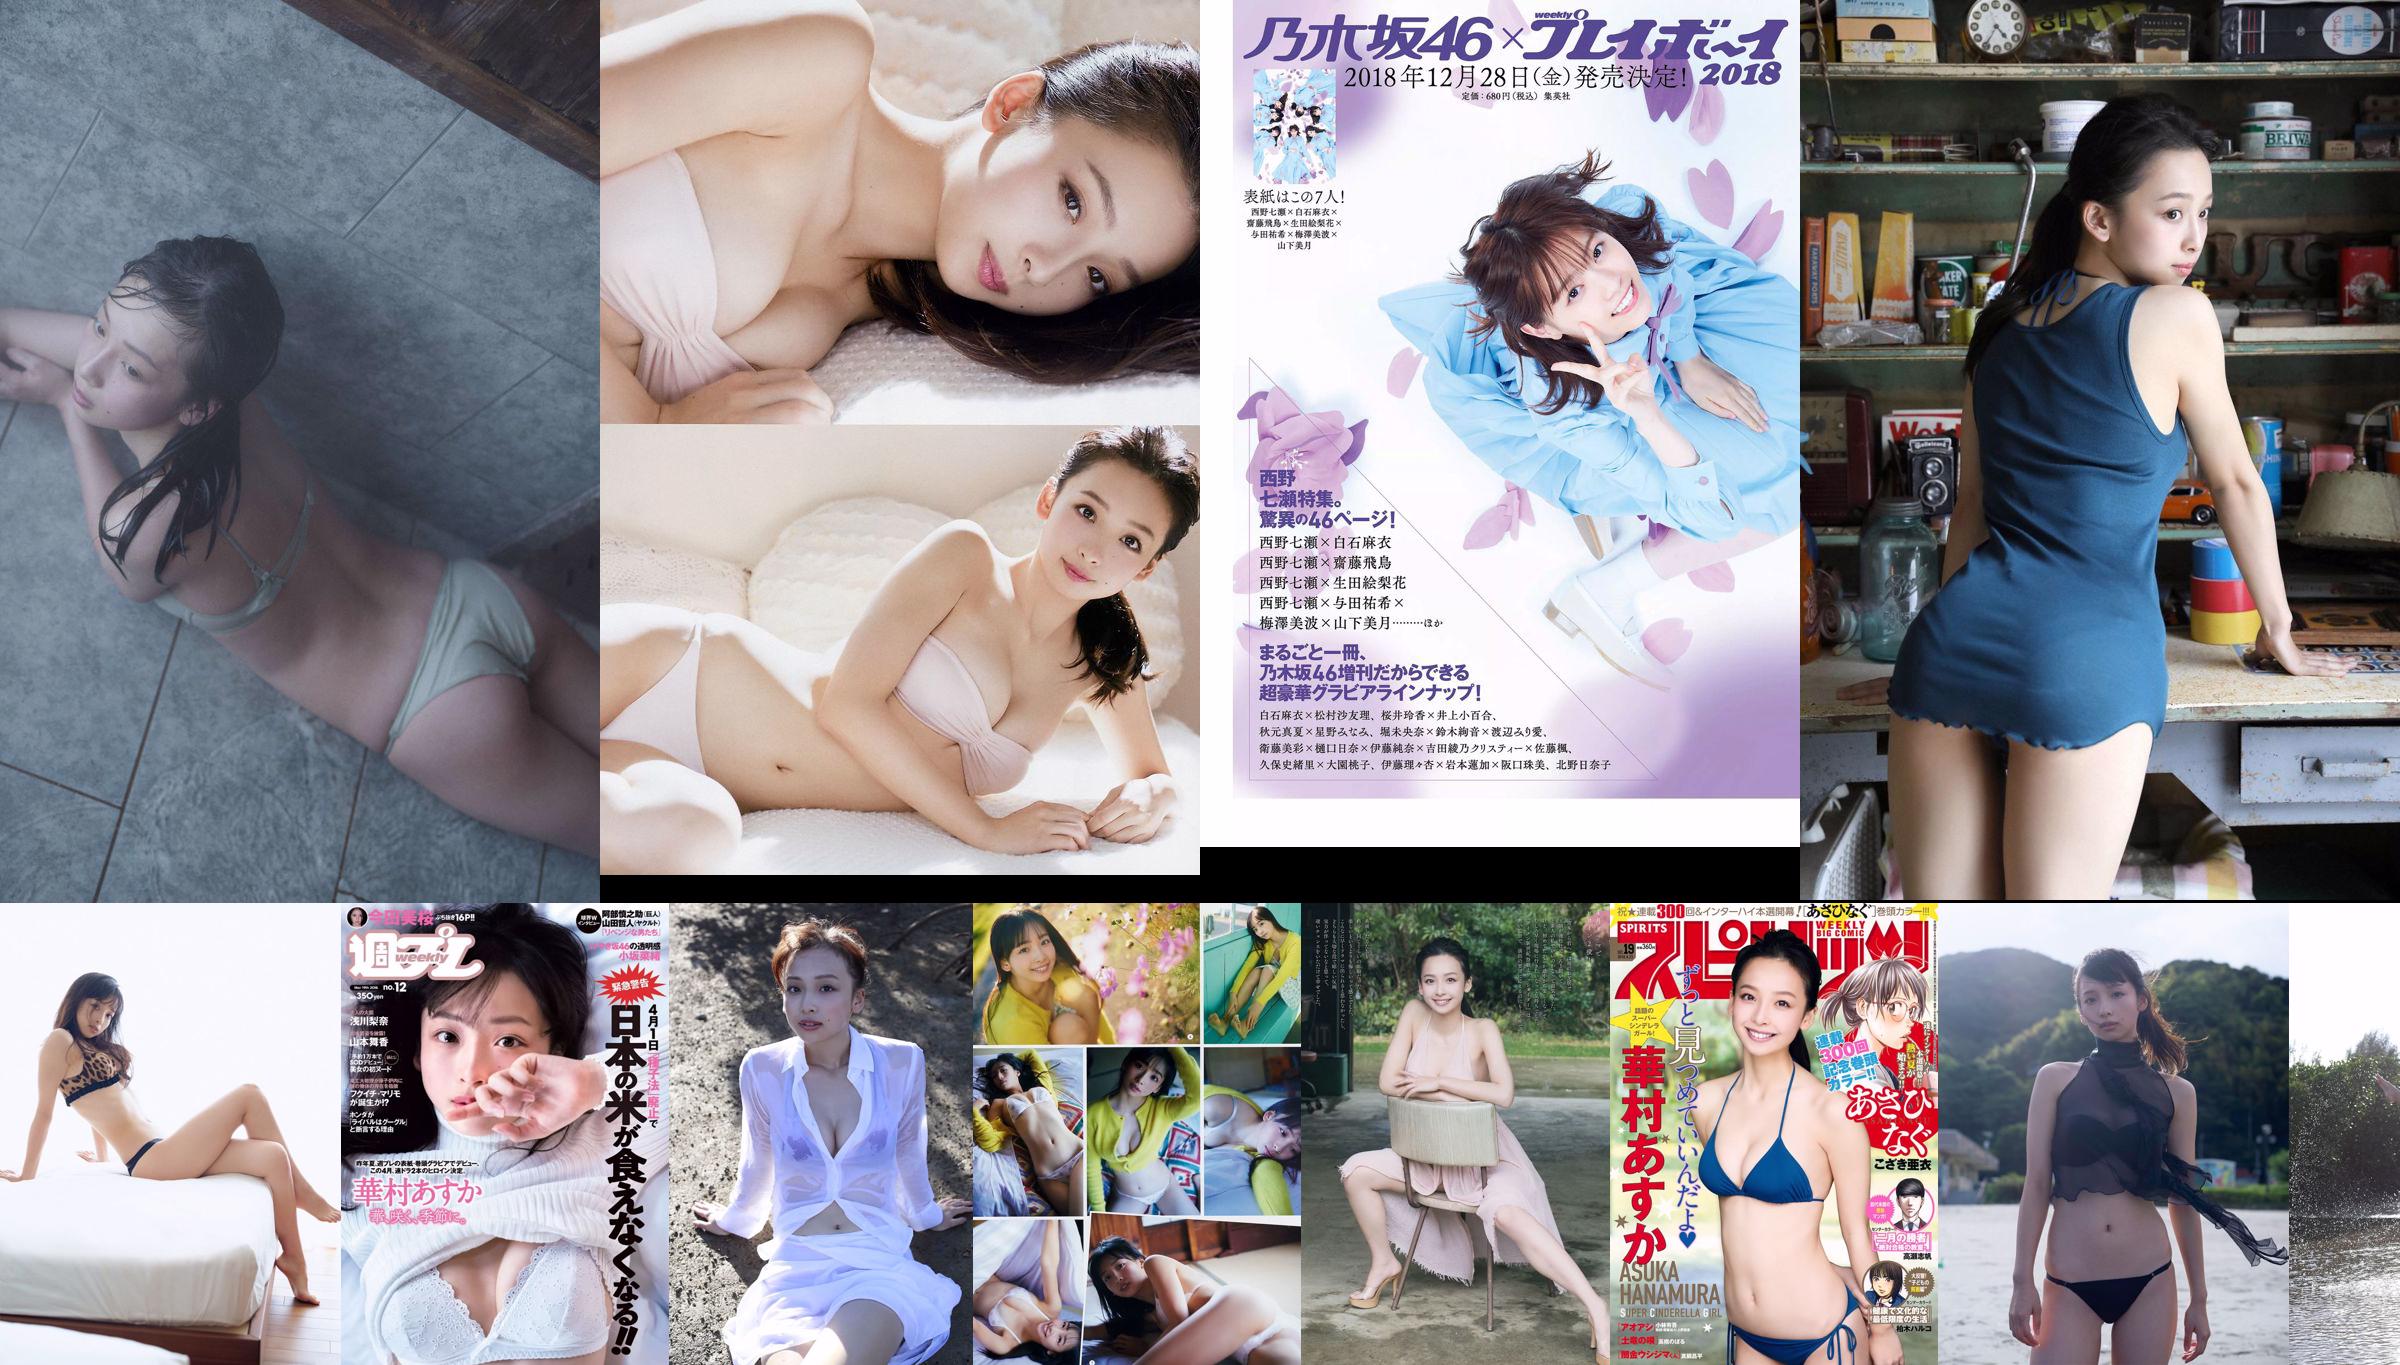 Huamura Tatsumi Natoko Okuyama Zebei Keluar Risa Bai Musim Panas [Playboy Mingguan] 2018 No.53 Majalah Foto No.18da57 Halaman 2